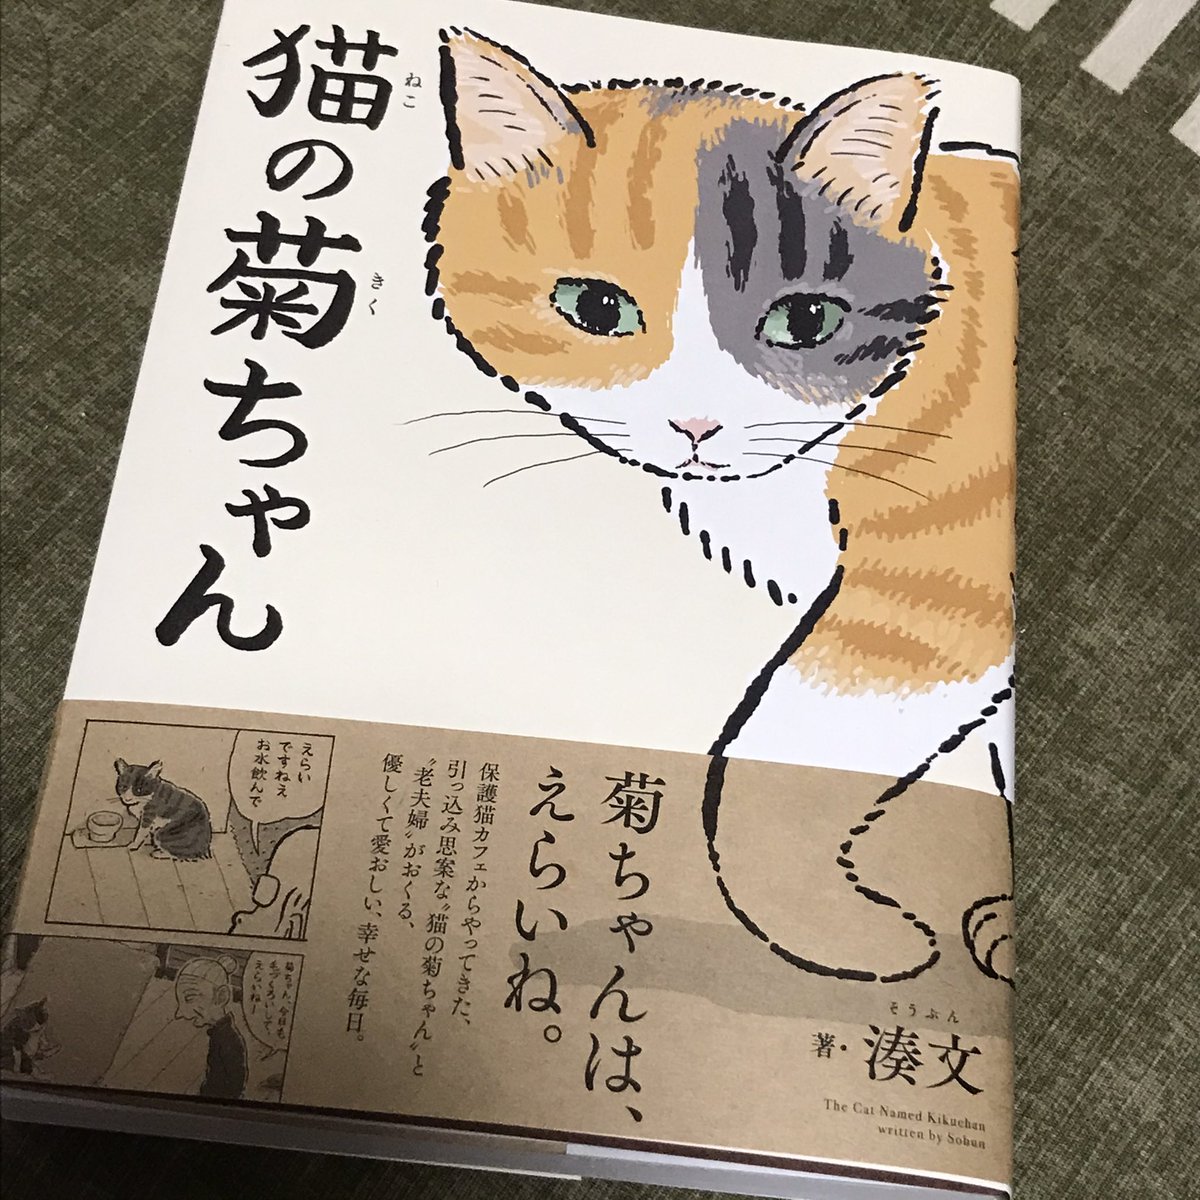 湊文さん「猫の菊ちゃん」読了。
単行本化をずっと待ってました!
菊ちゃんがかわいくてかわいくてかわいくてしょうがなくて、菊ちゃんがかわいいです。あと菊ちゃんがかわいい。 